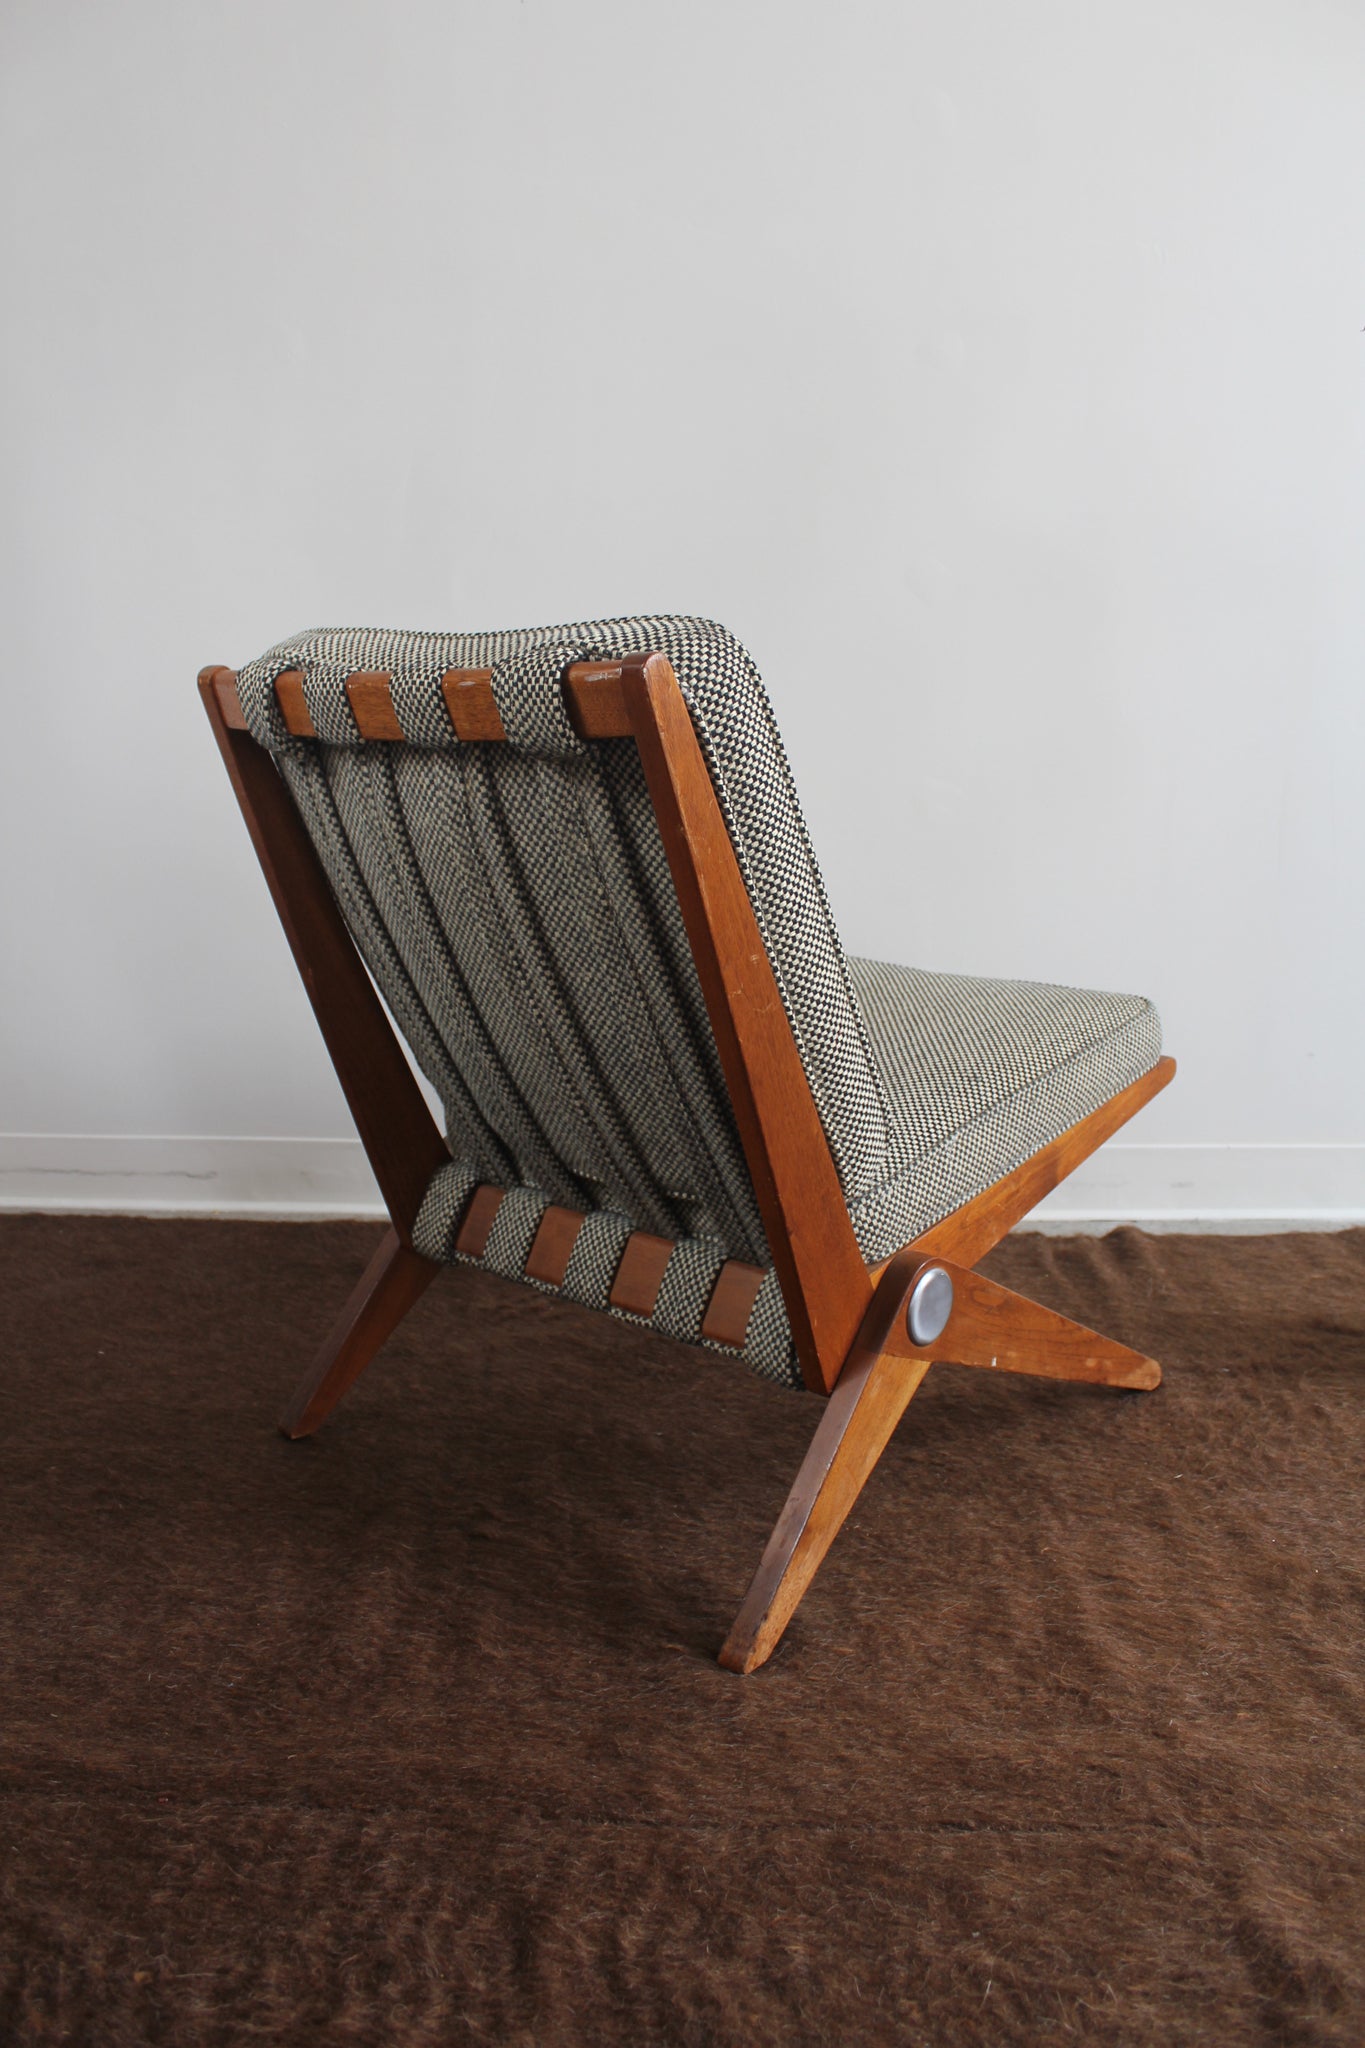 Model 92 Scissor Chair by Pierre Jeanneret for Knoll